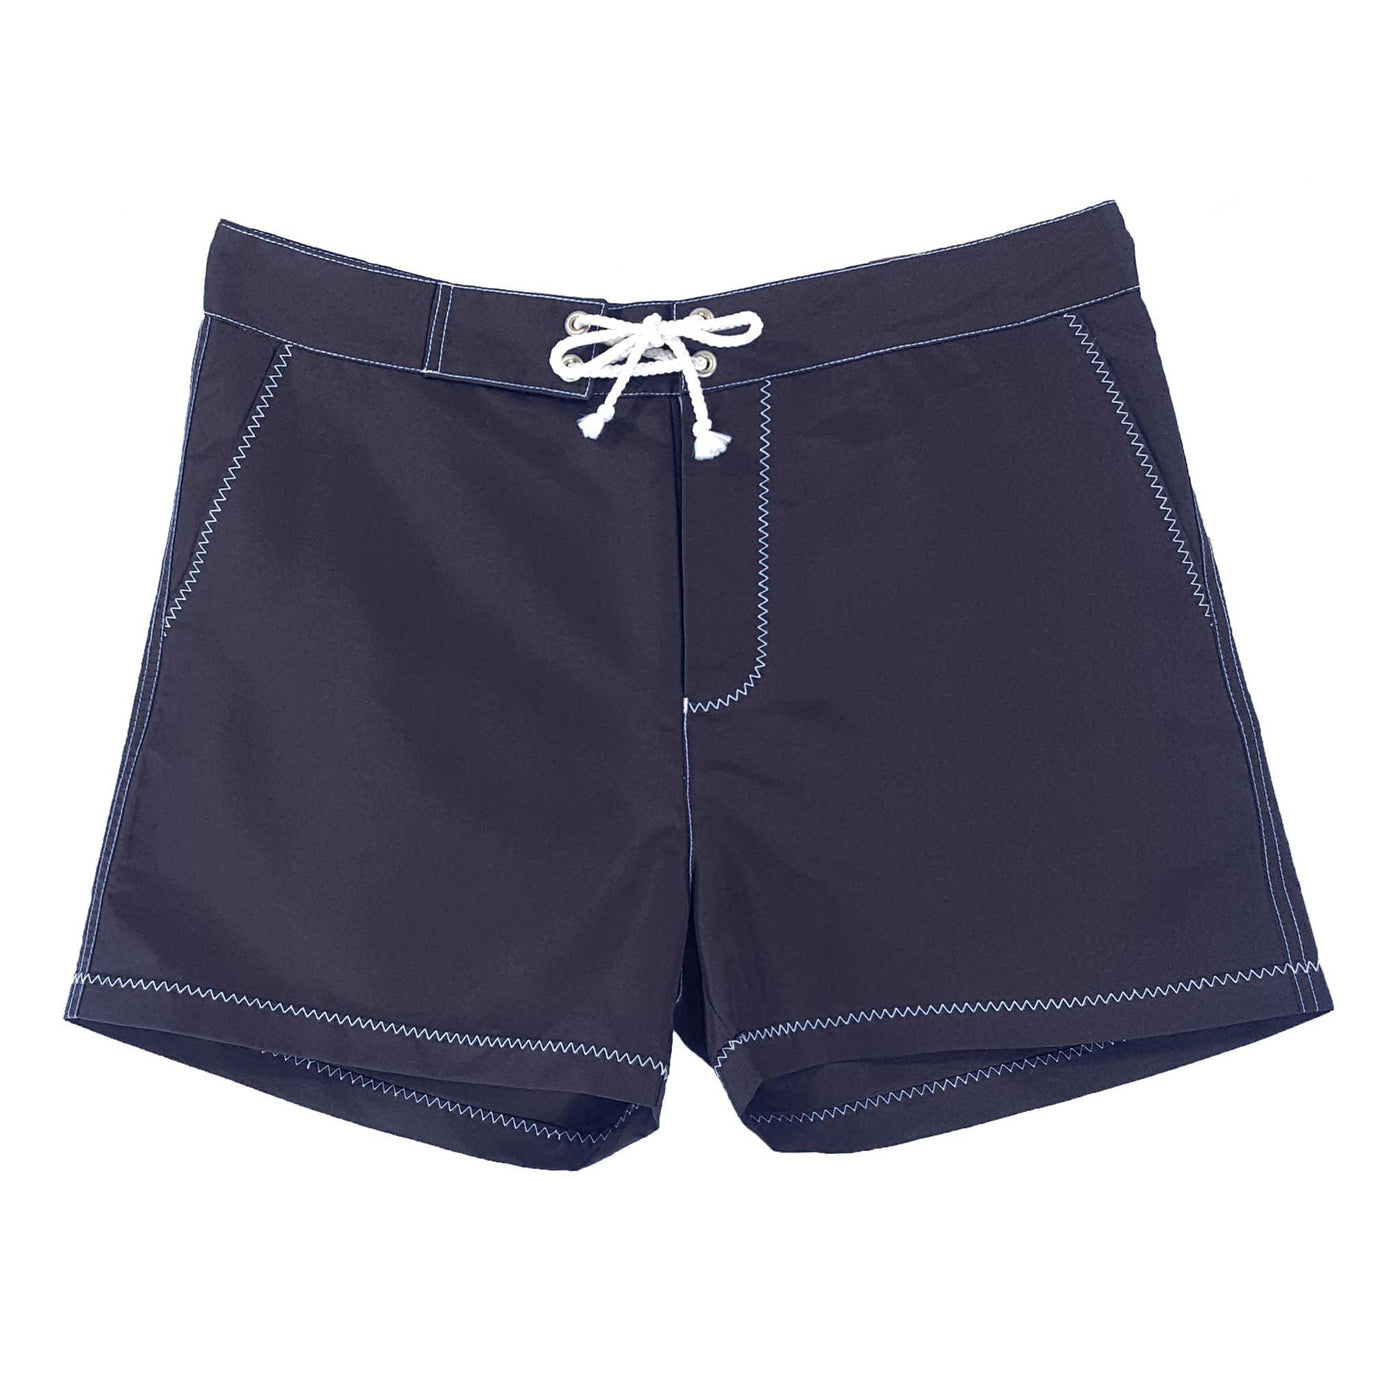 Navy blue swim shorts - white stitching